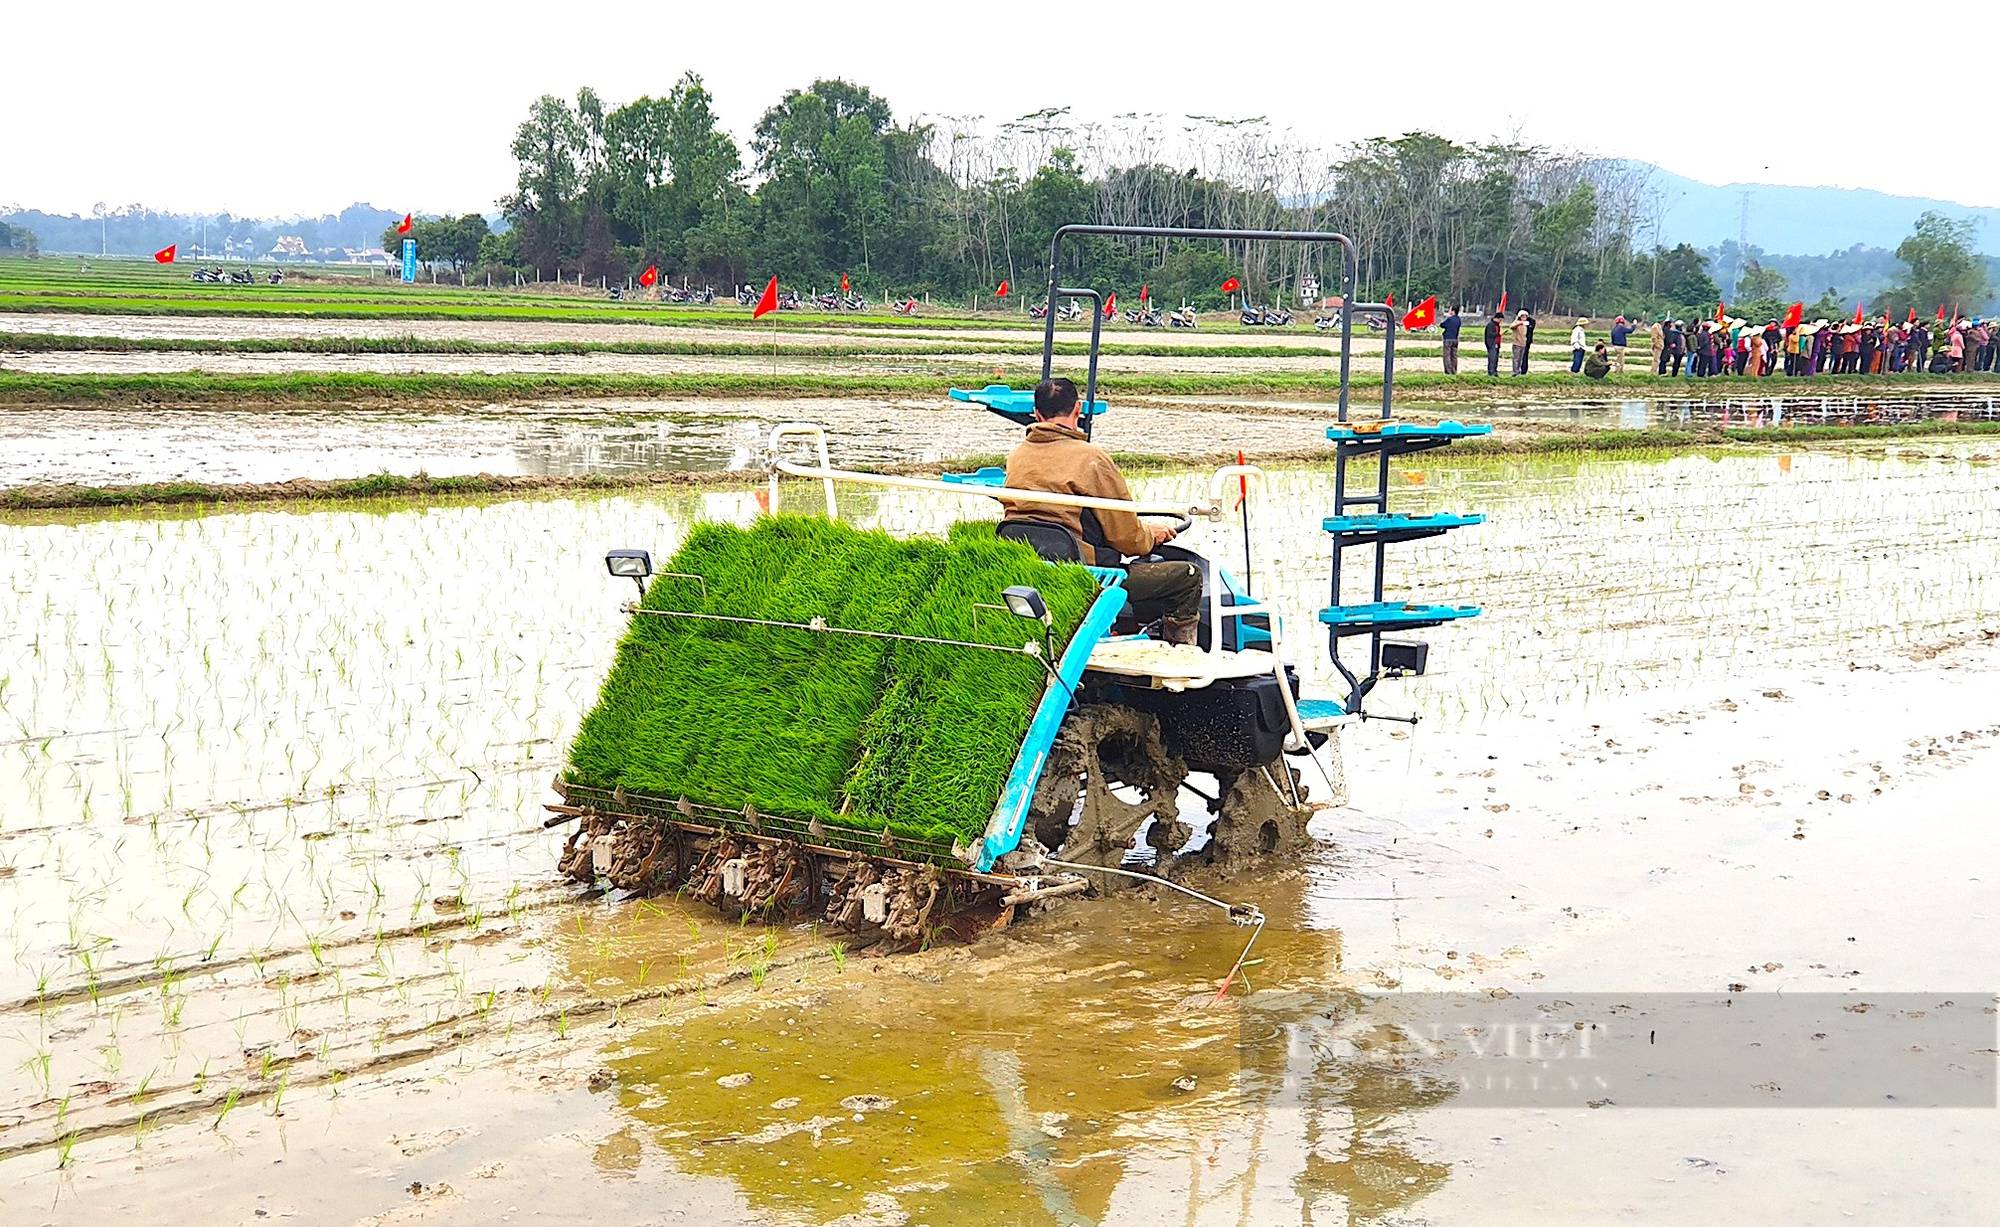 Đưa máy cấy vào nông nghiệp giúp vựa lúa Yên Thành (Nghệ An) tăng năng suất - Ảnh 1.